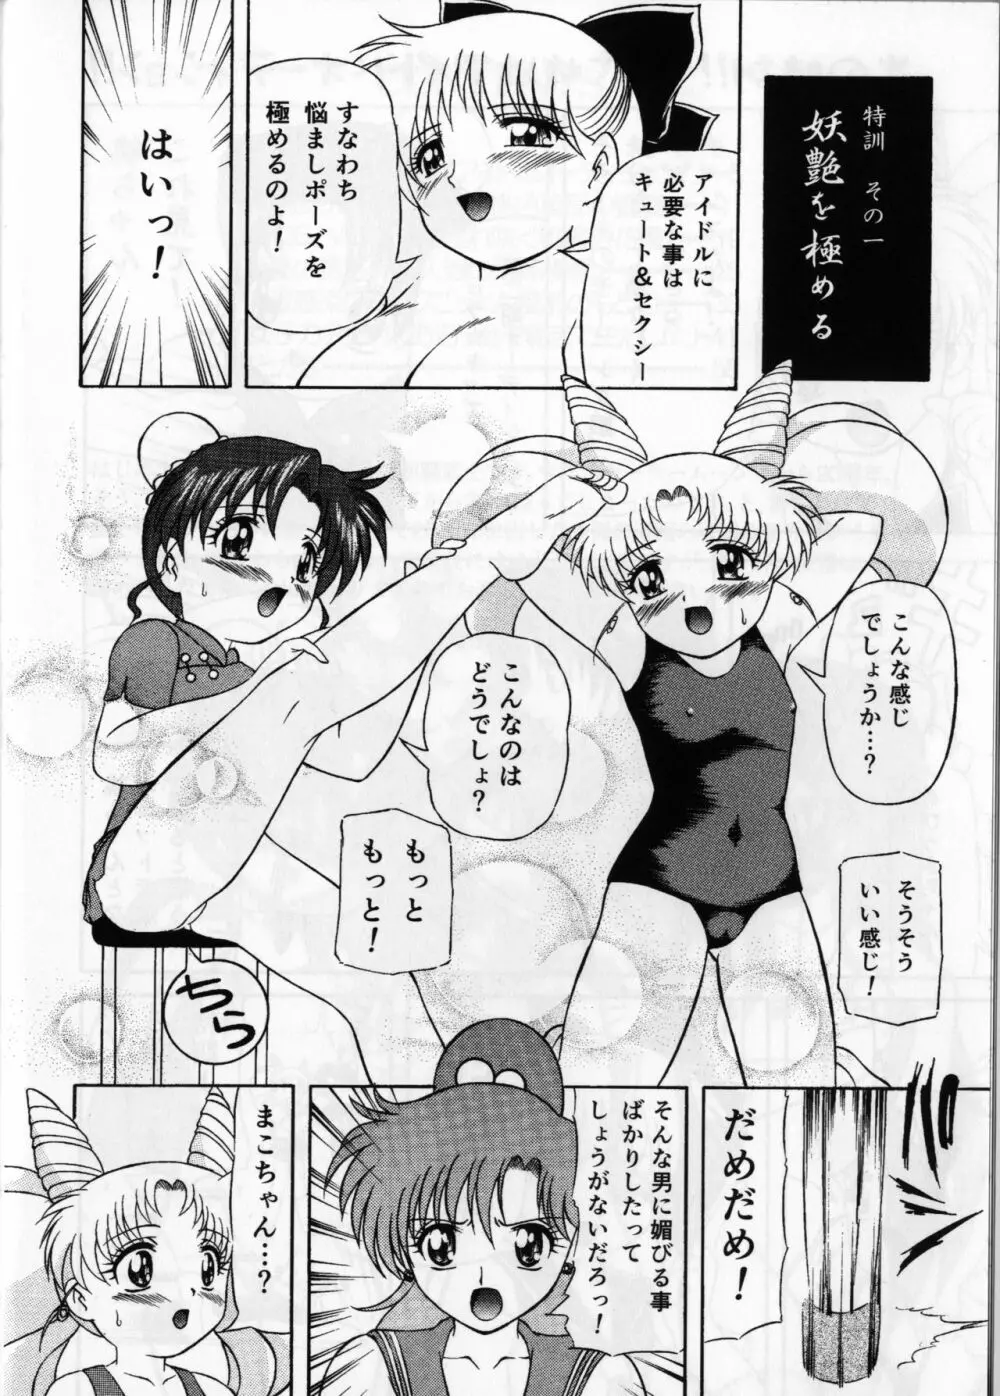 ぴんく・しゅがぁ 20th Anniversary Special 8ページ